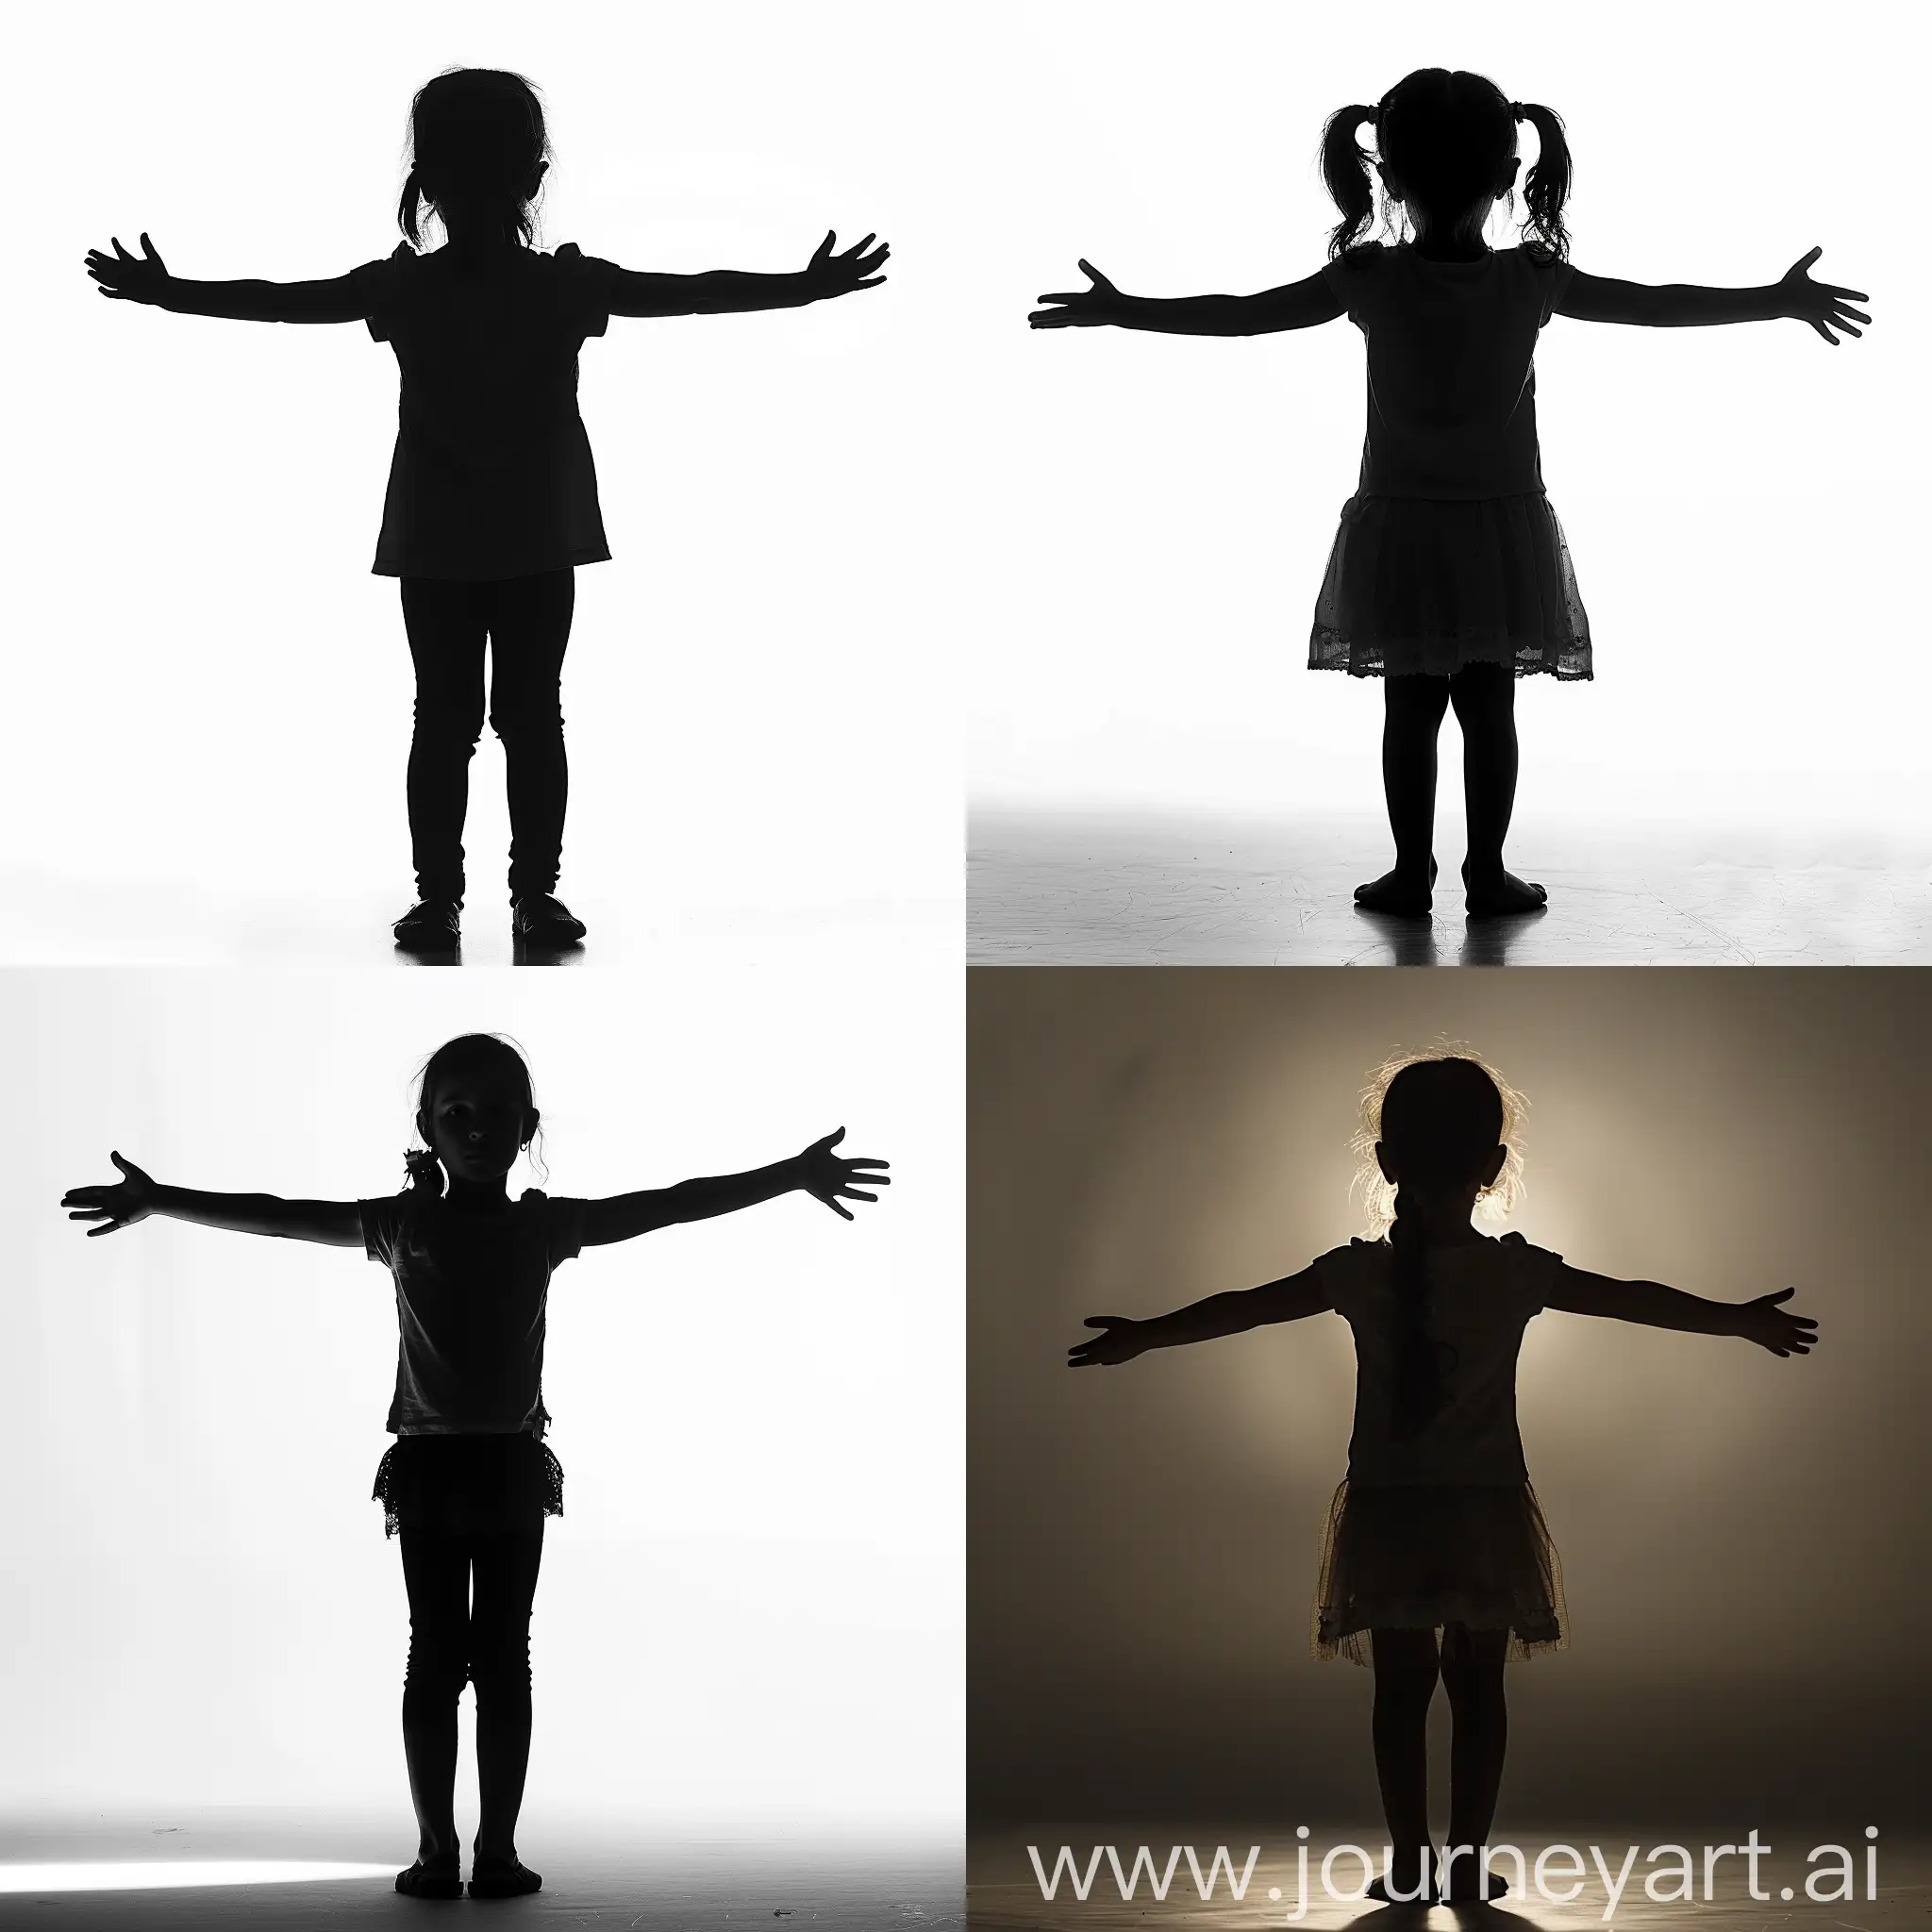 Joyful-Little-Girl-Spreading-Arms-Silhouette